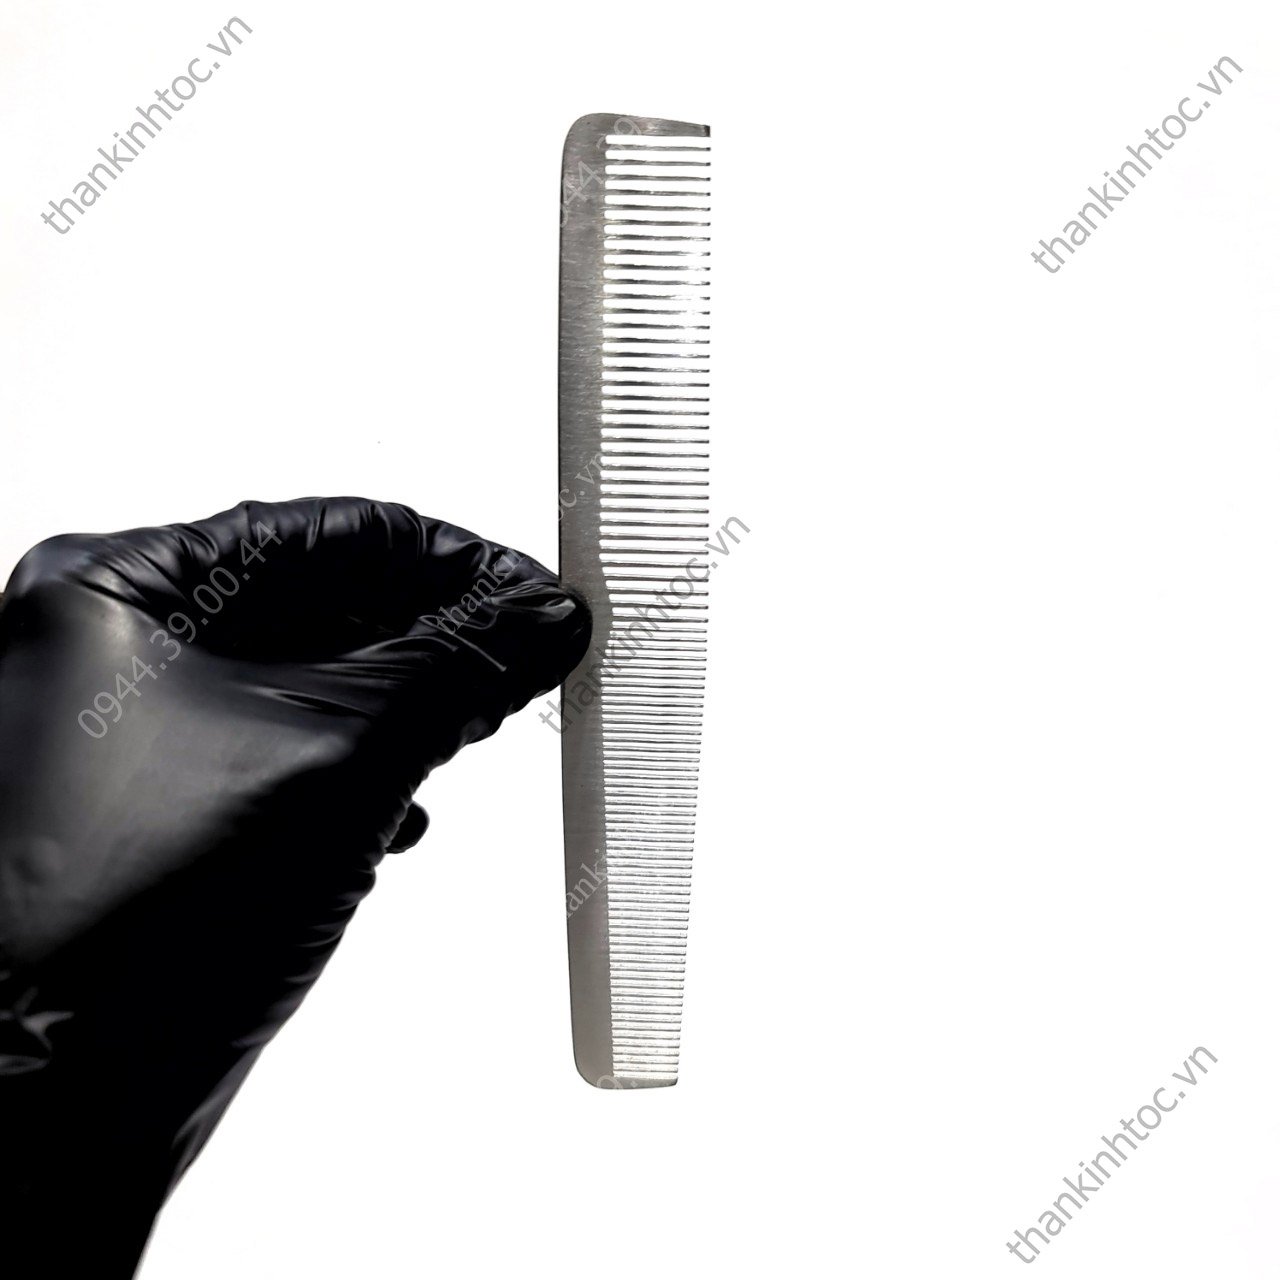 Kéo cắt tóc Viko Acro V1 | Donghecattoc.com | Đồ nghề cắt tóc